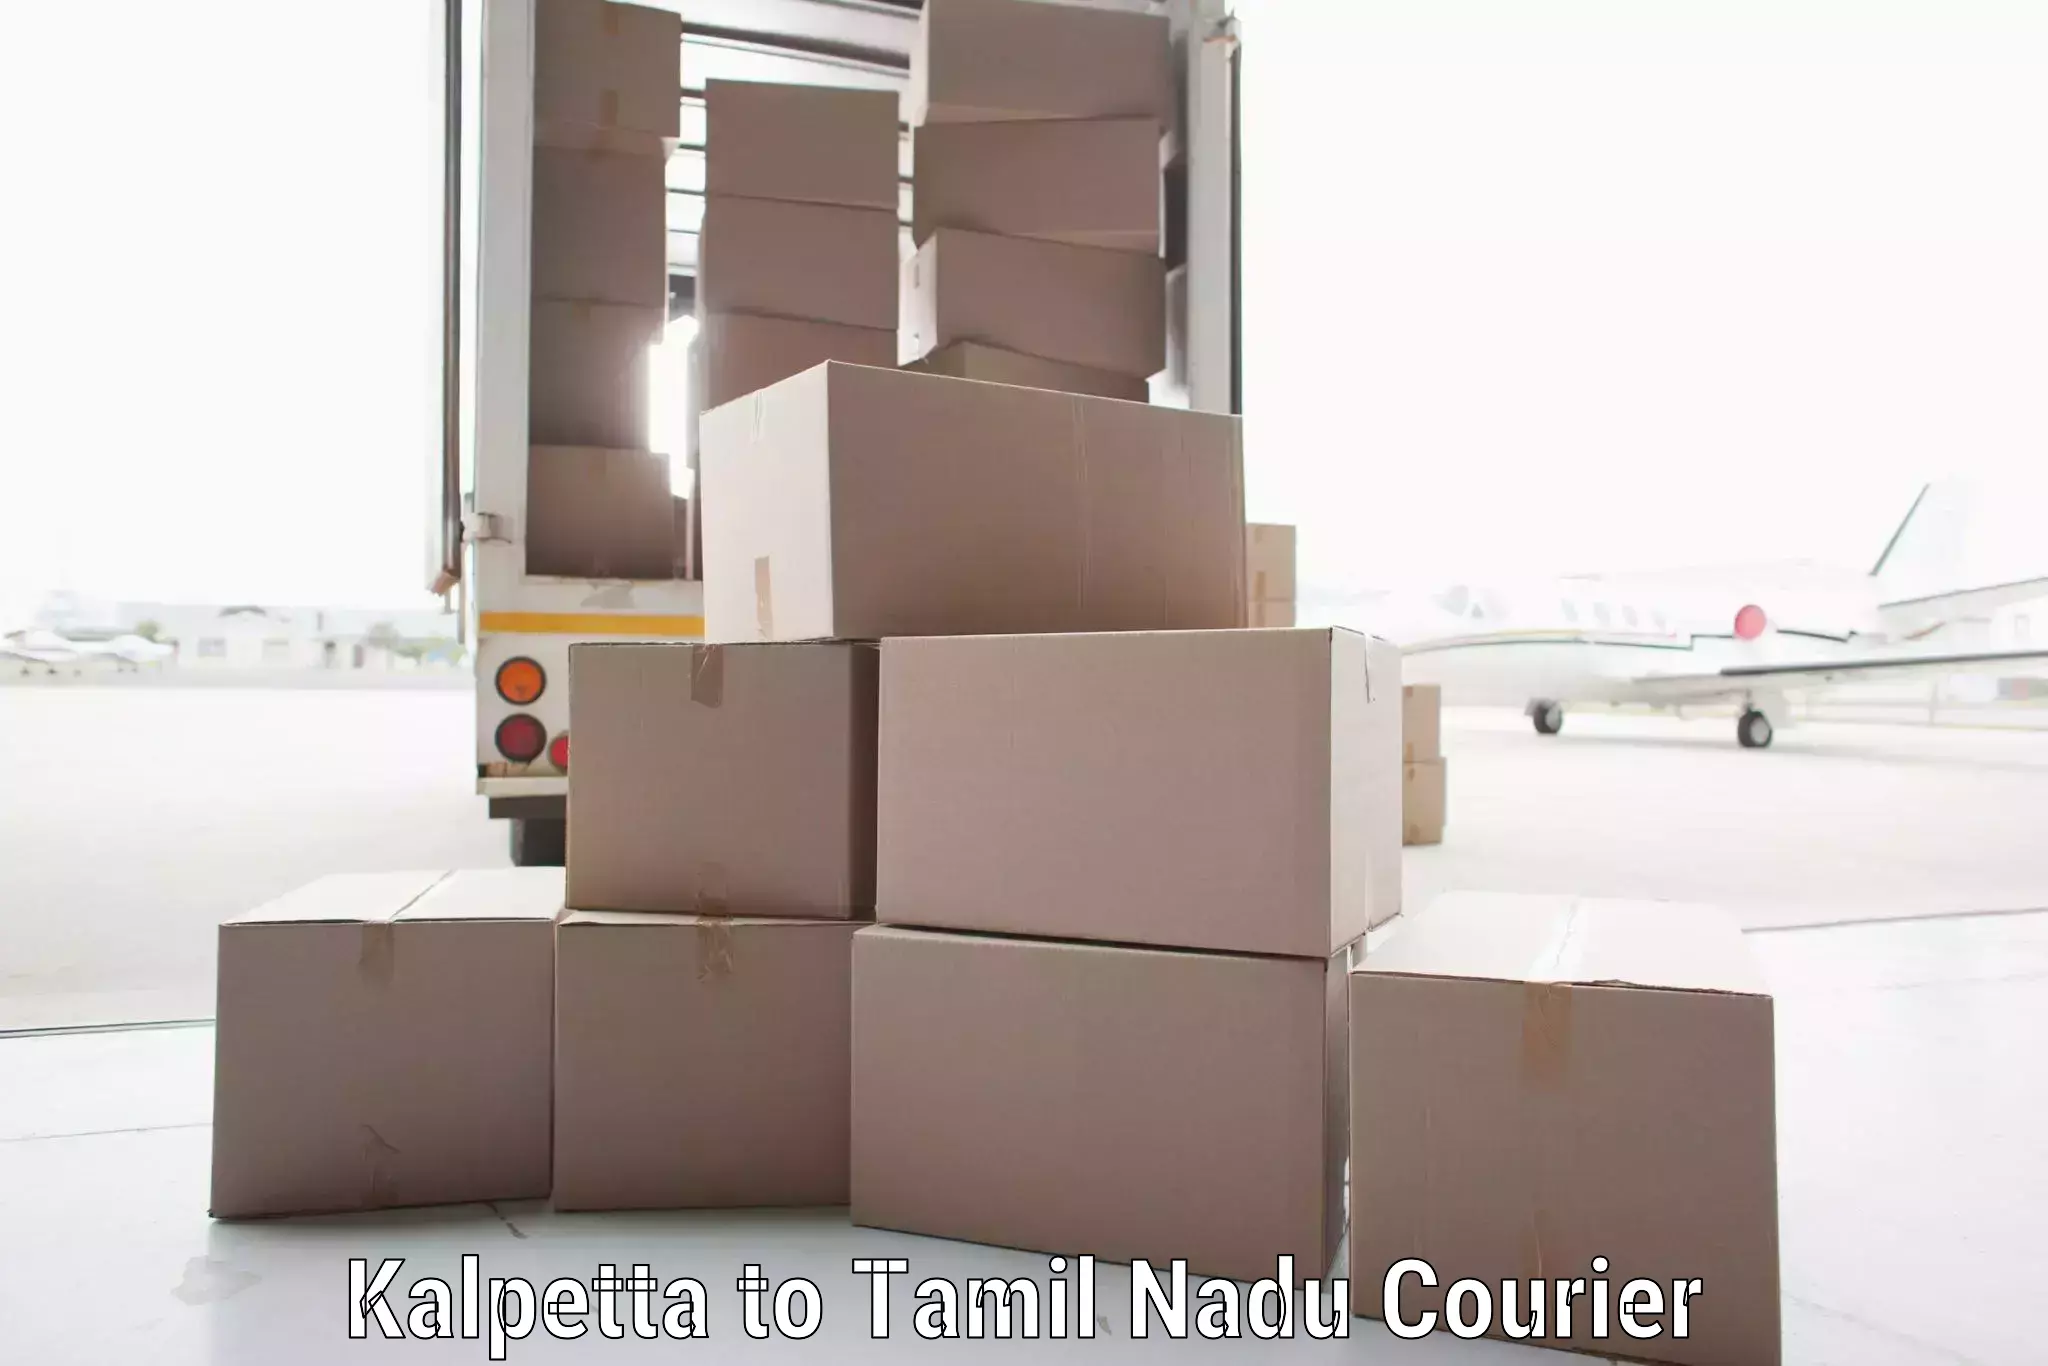 Tailored shipping services Kalpetta to Tirupattur